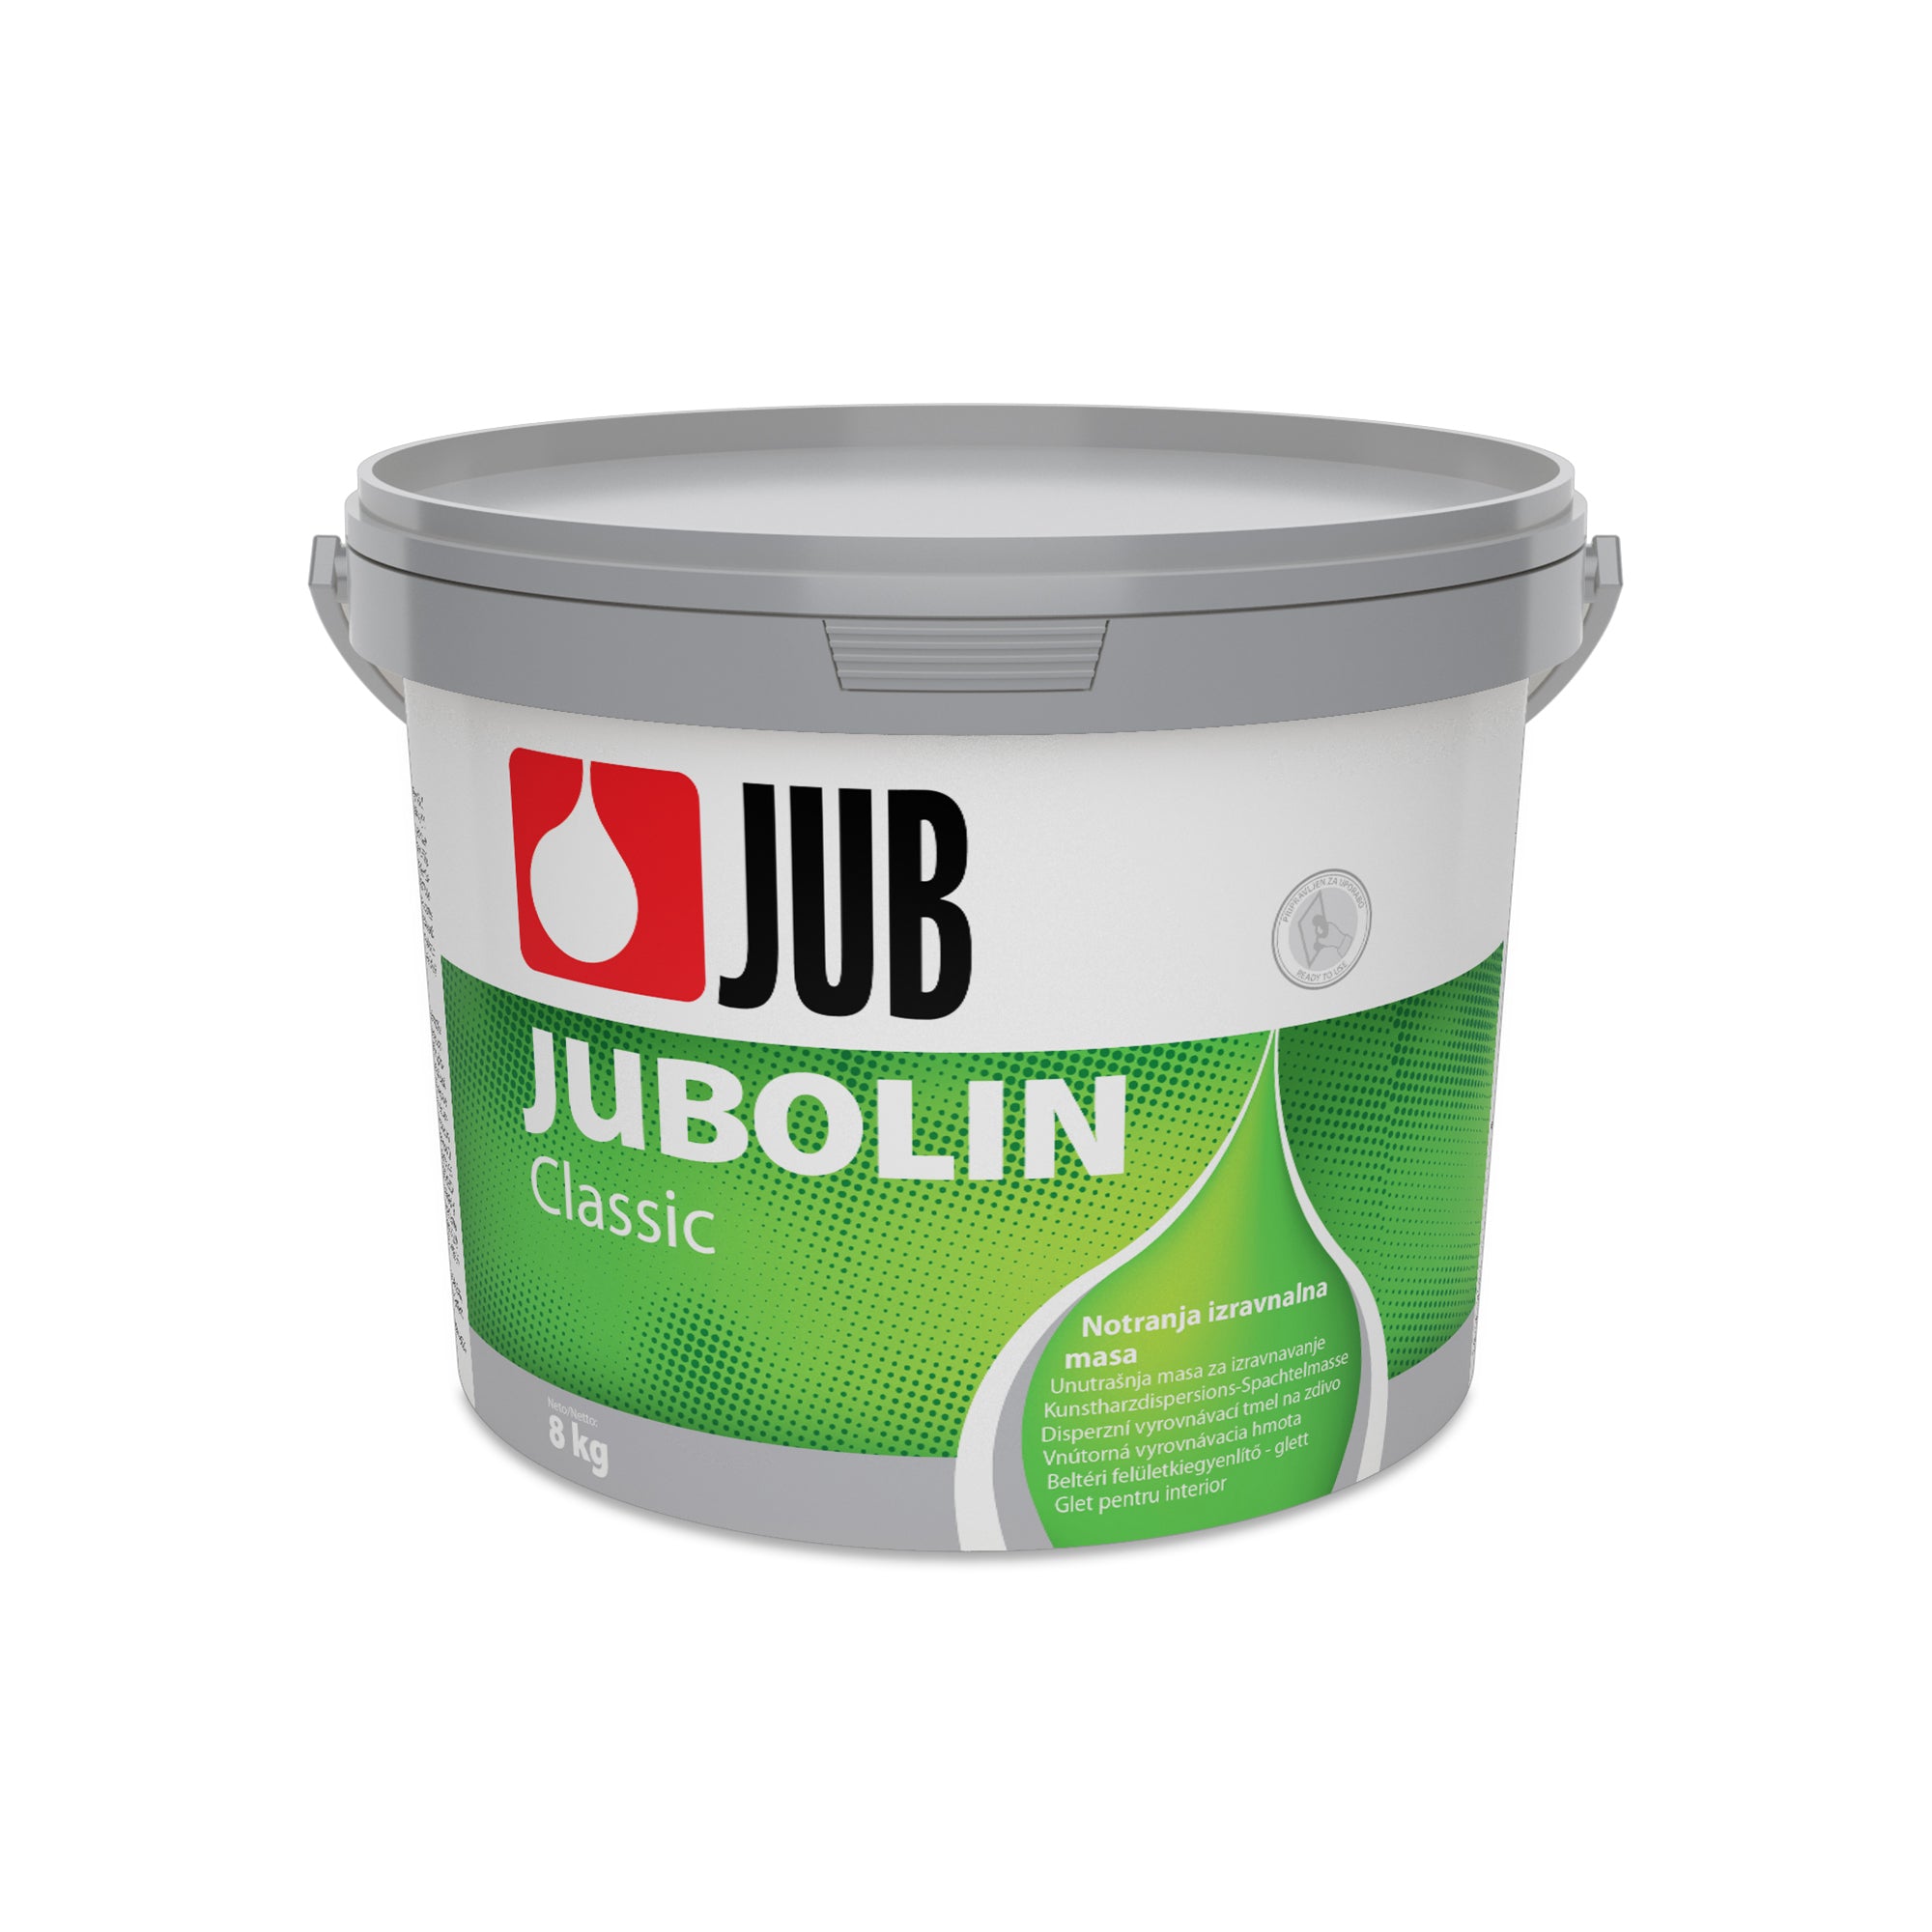 JUB JUBOLIN Classic vnútorná vyrovnávacia hmota 8 kg